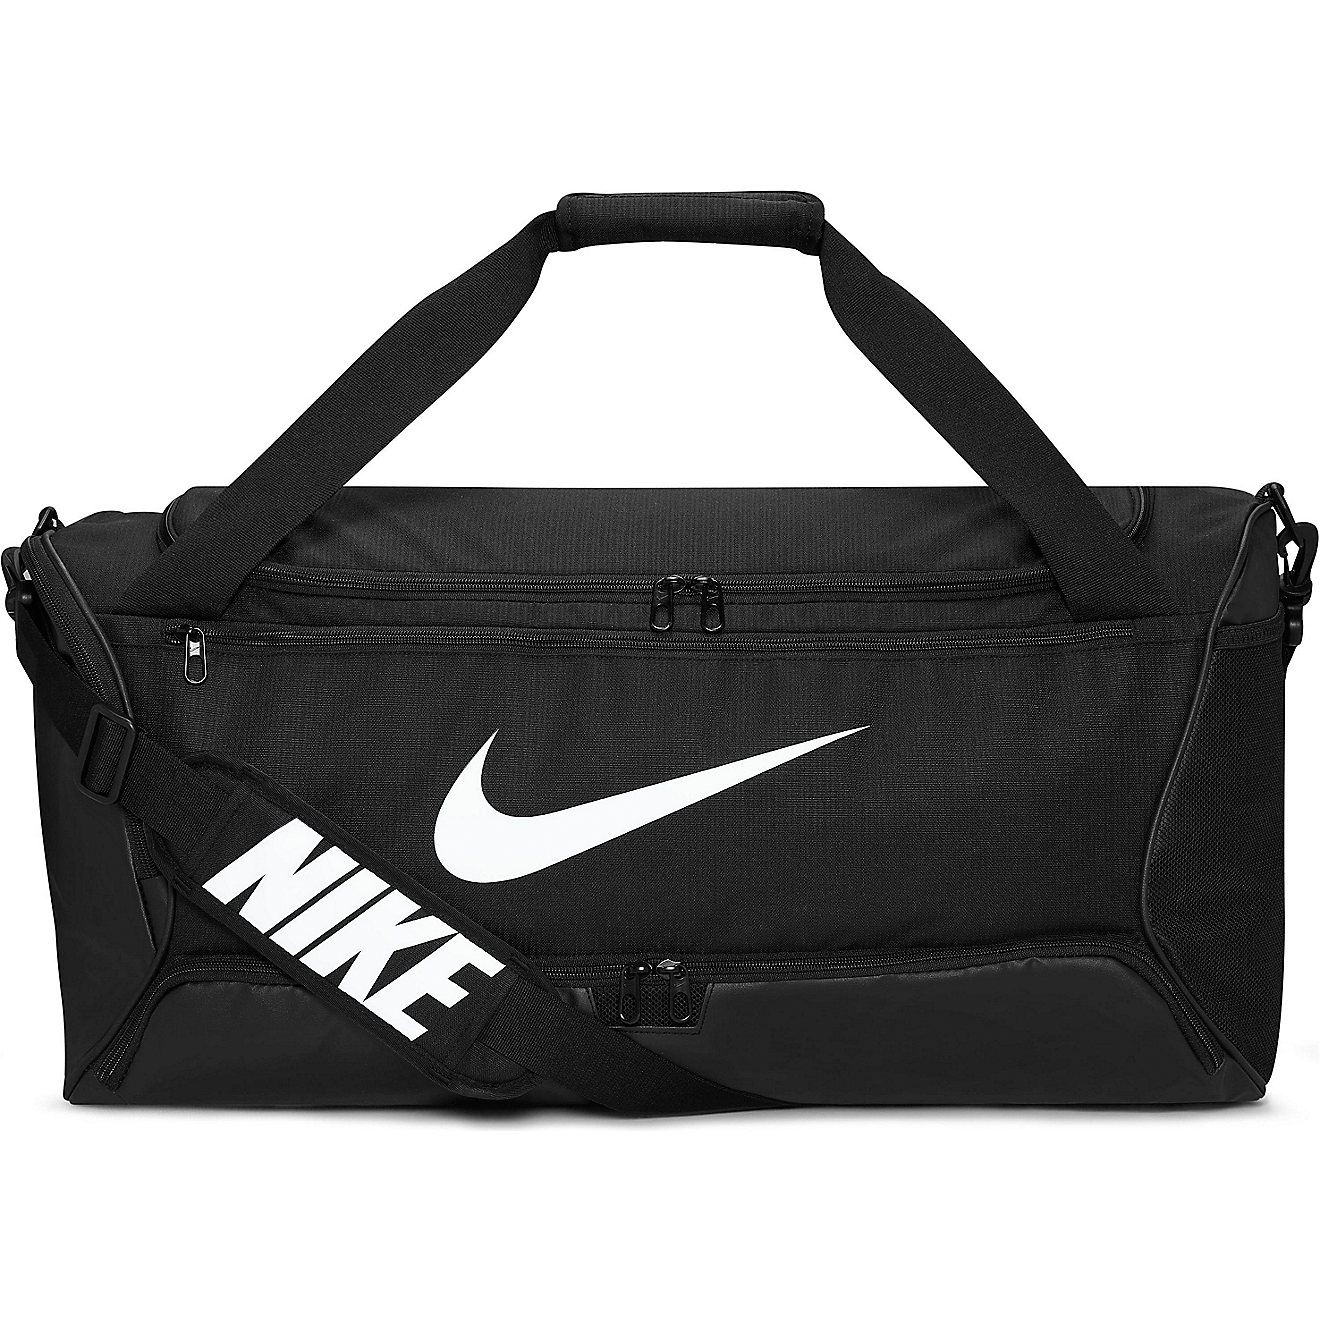 Nike Training Medium Duffel Bag                                                                                                  - view number 2